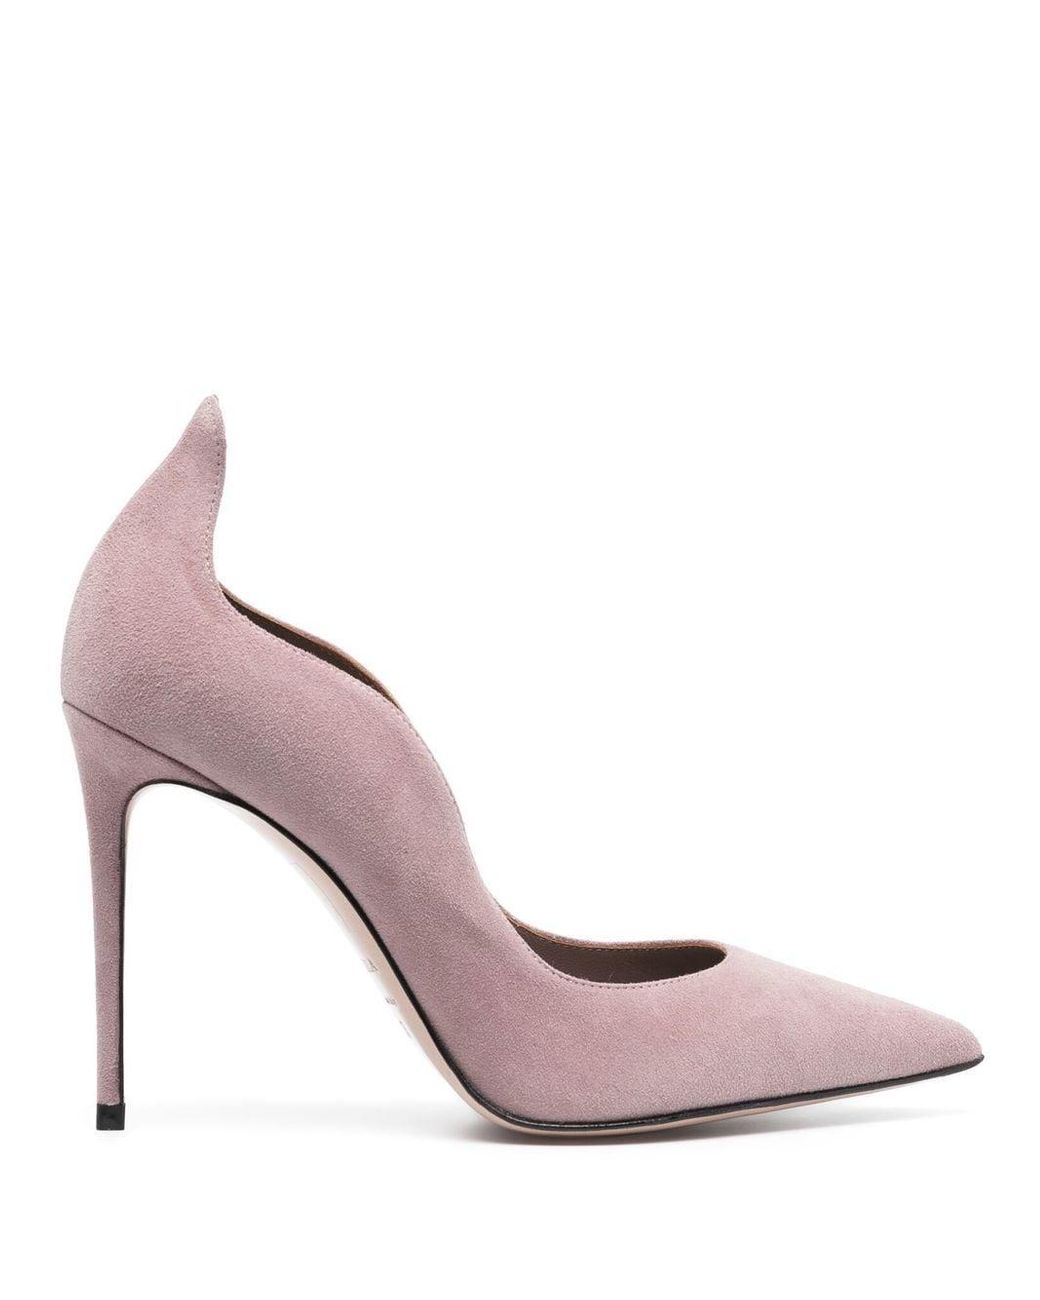 Escarpins Eva 100 mm Le Silla en coloris Rose Femme Chaussures à talons Chaussures à talons Le Silla 